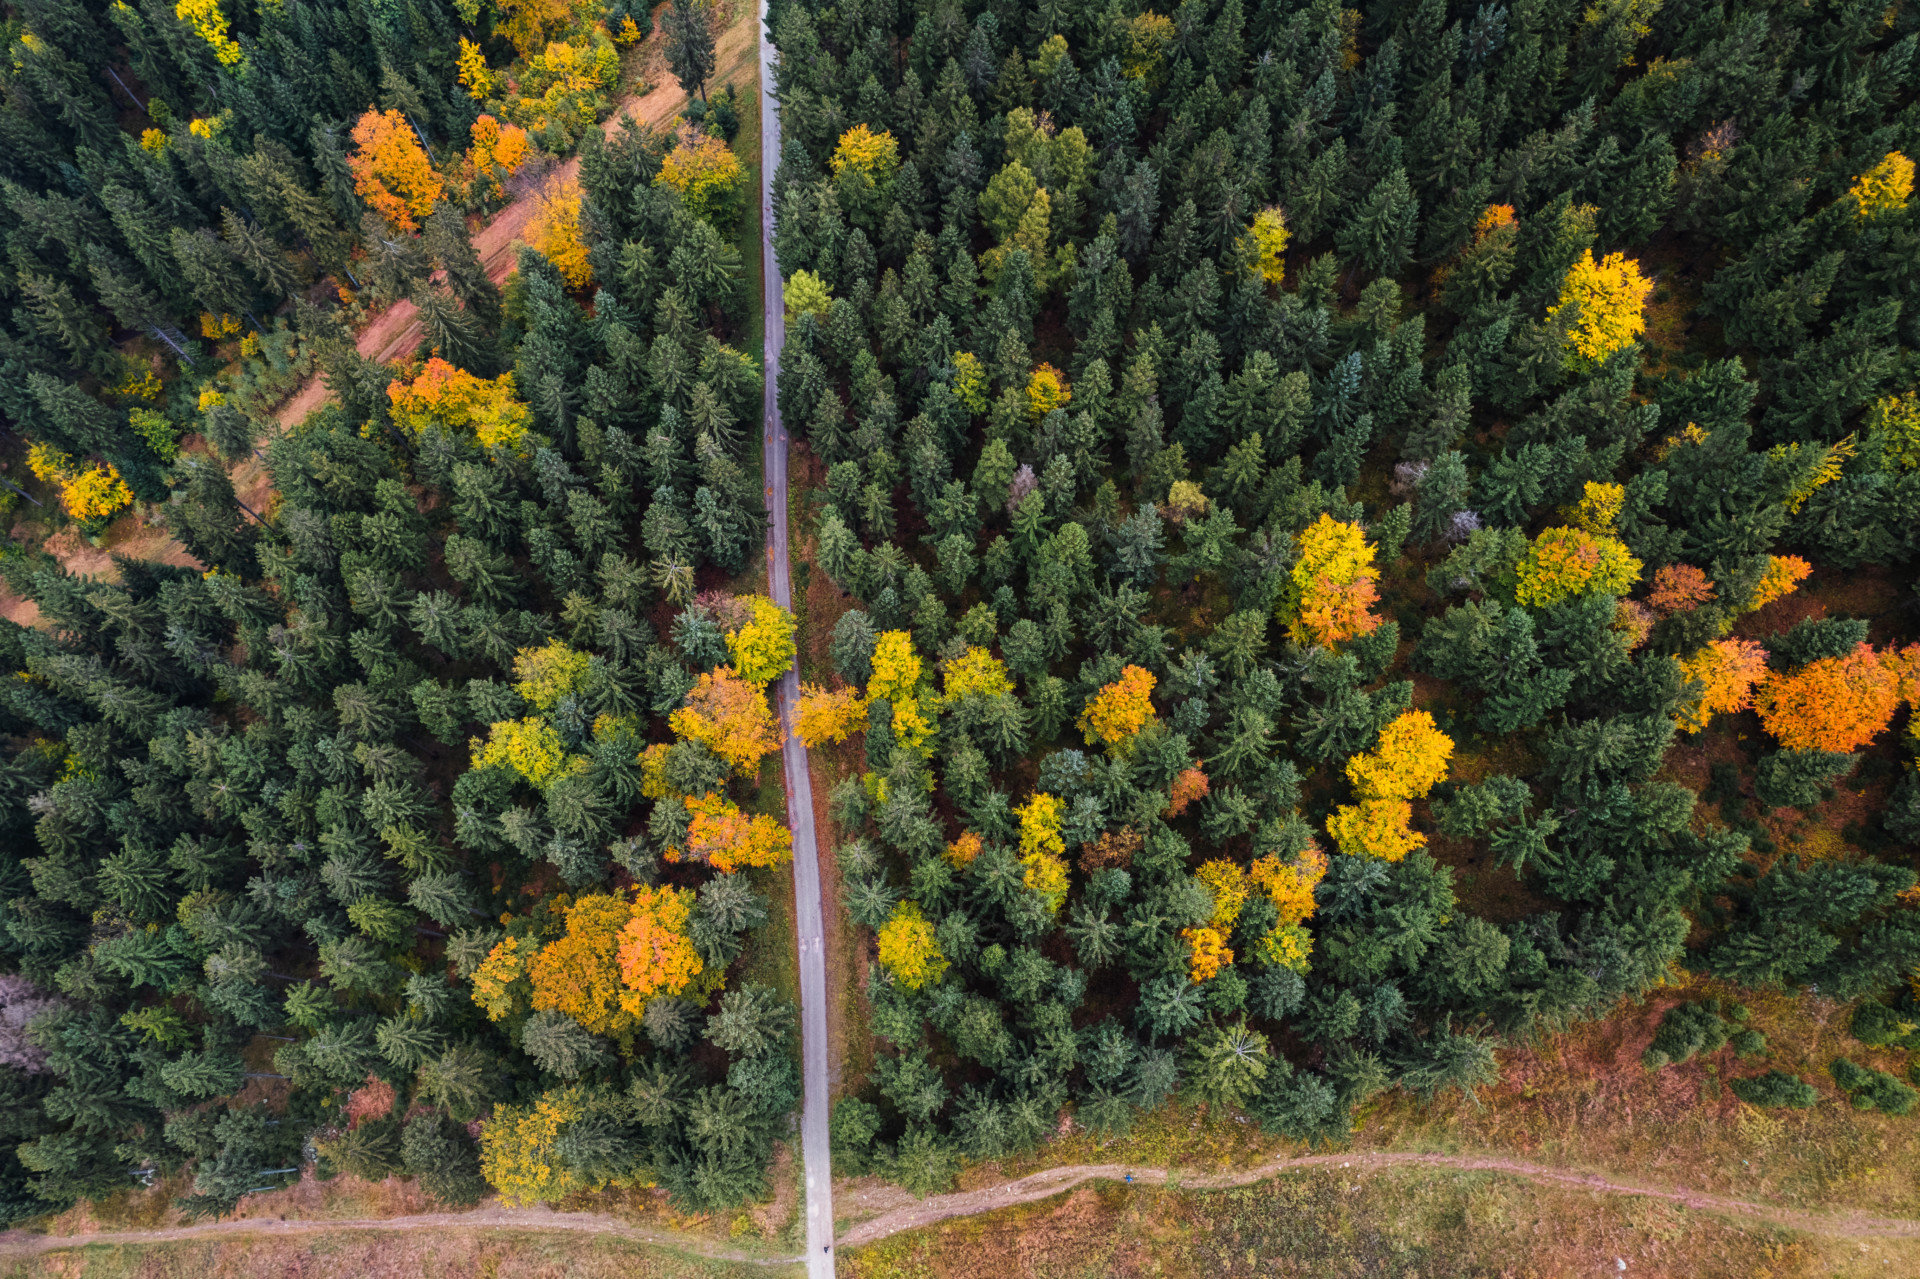 Widok z góry na las jesienią. Kolory drzew od ciemno zielonych przez pomarańczowe do żółtych malują krajobraz.